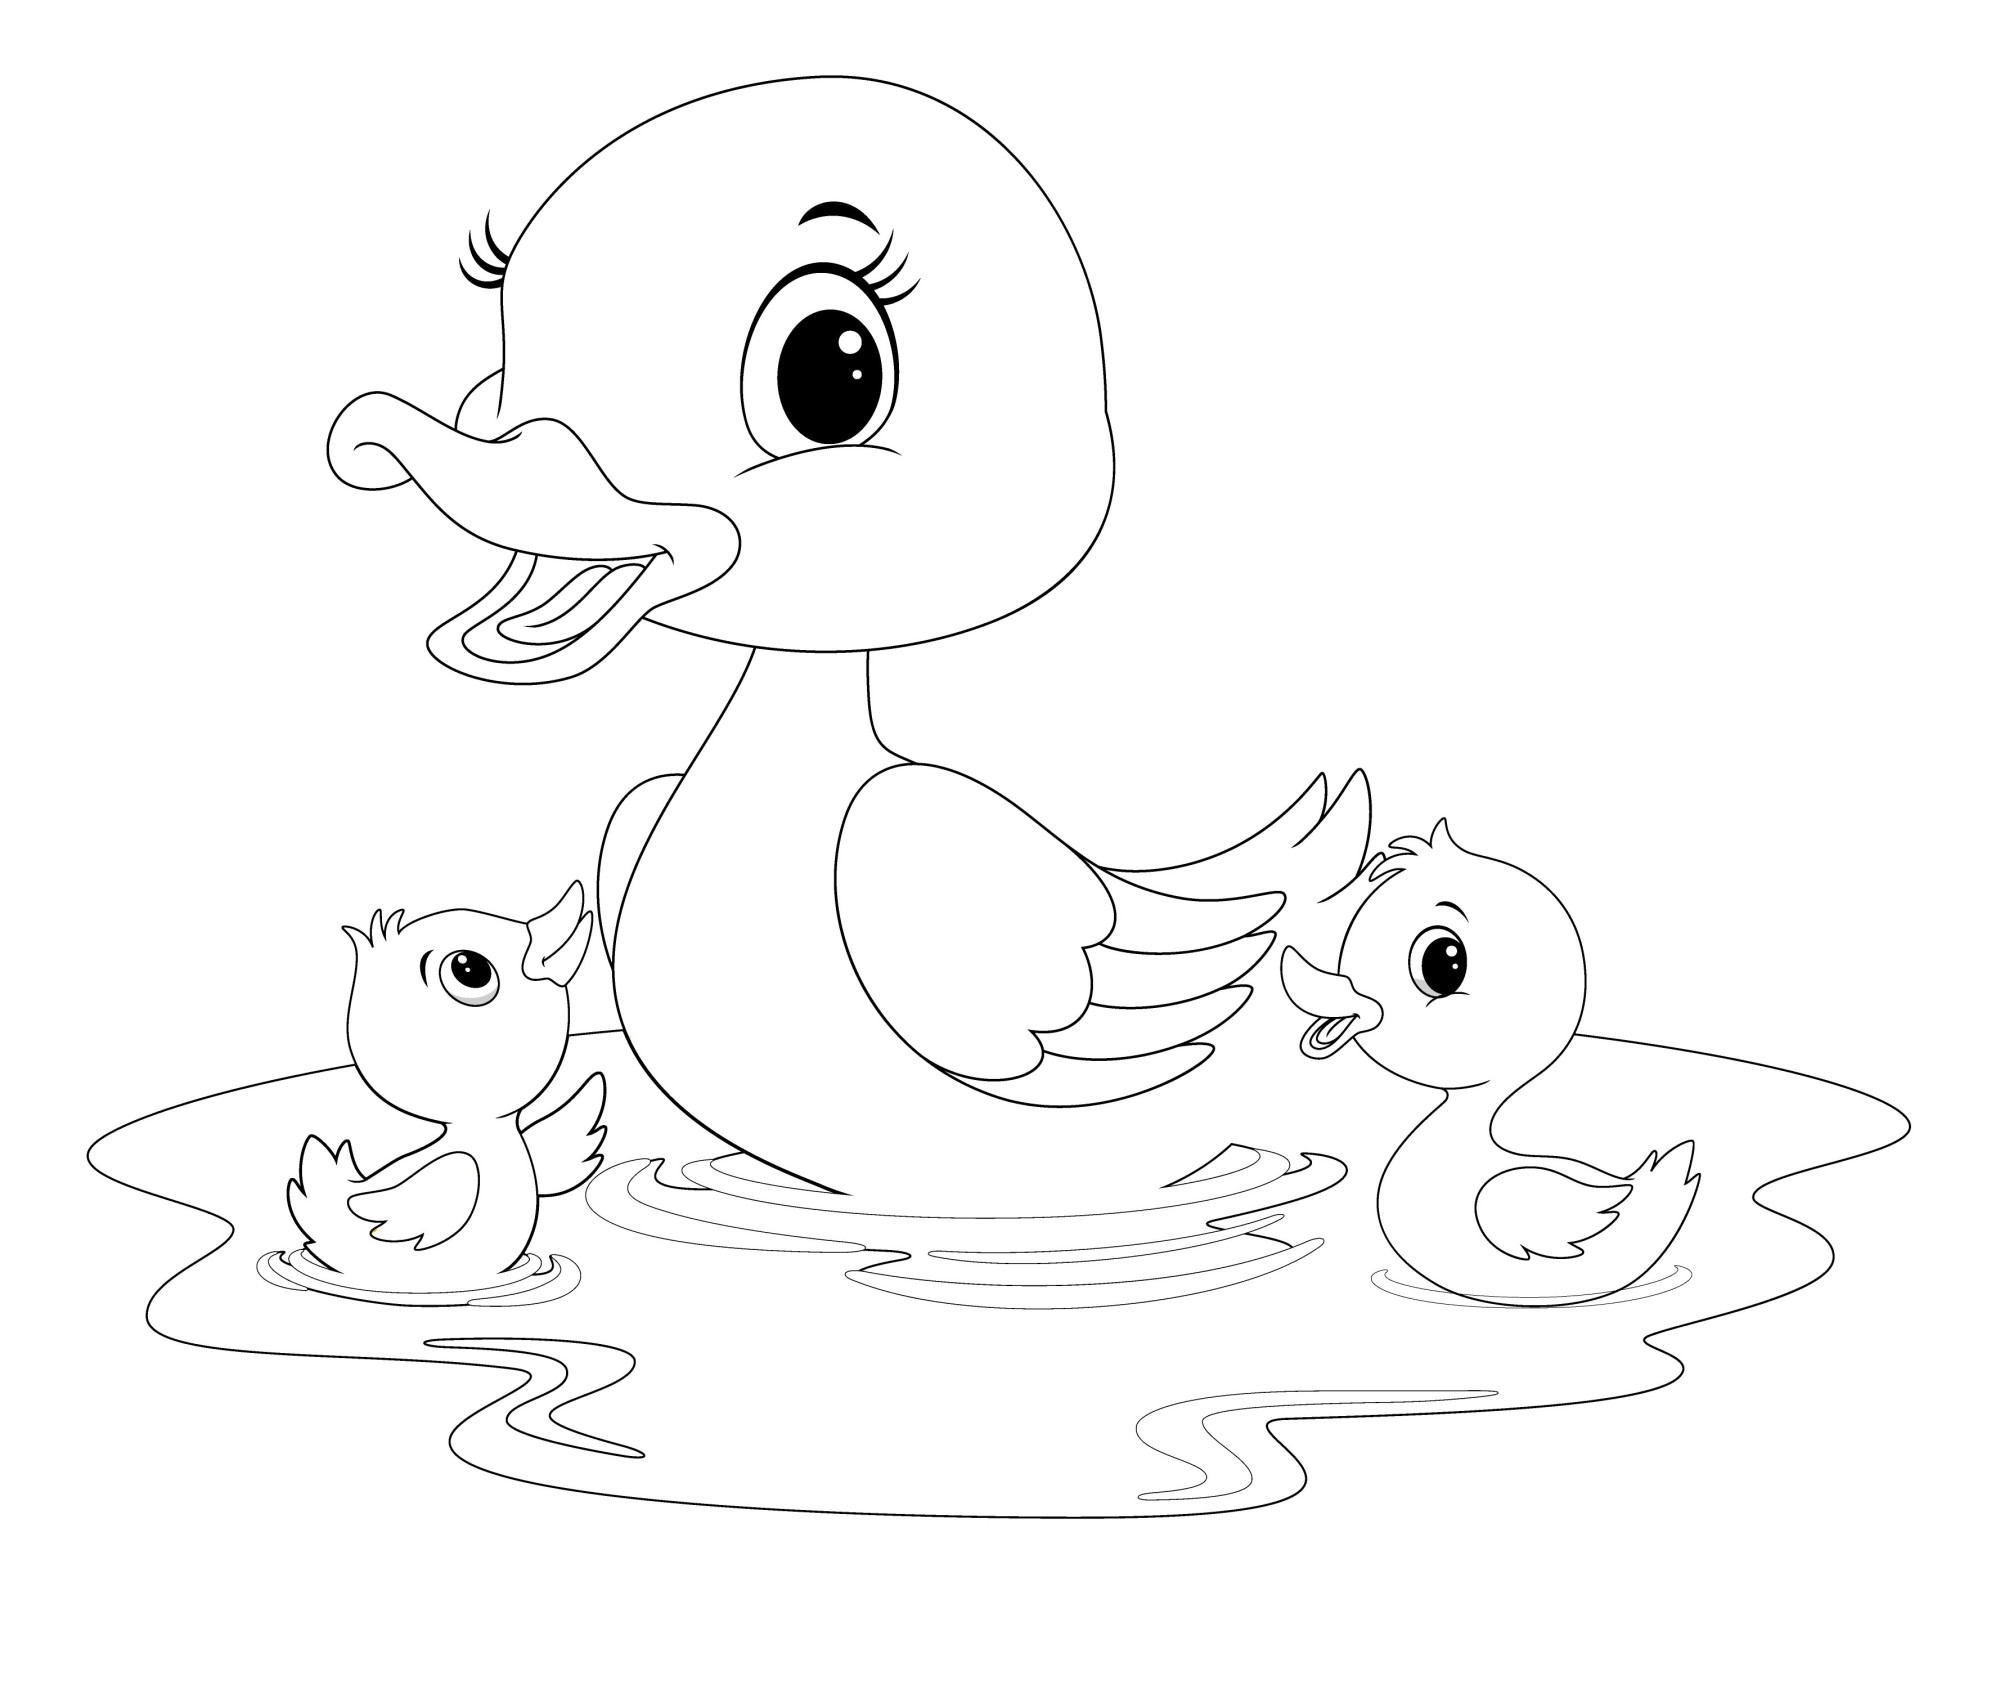 Раскраска для детей: утка с малышами утятами в воде